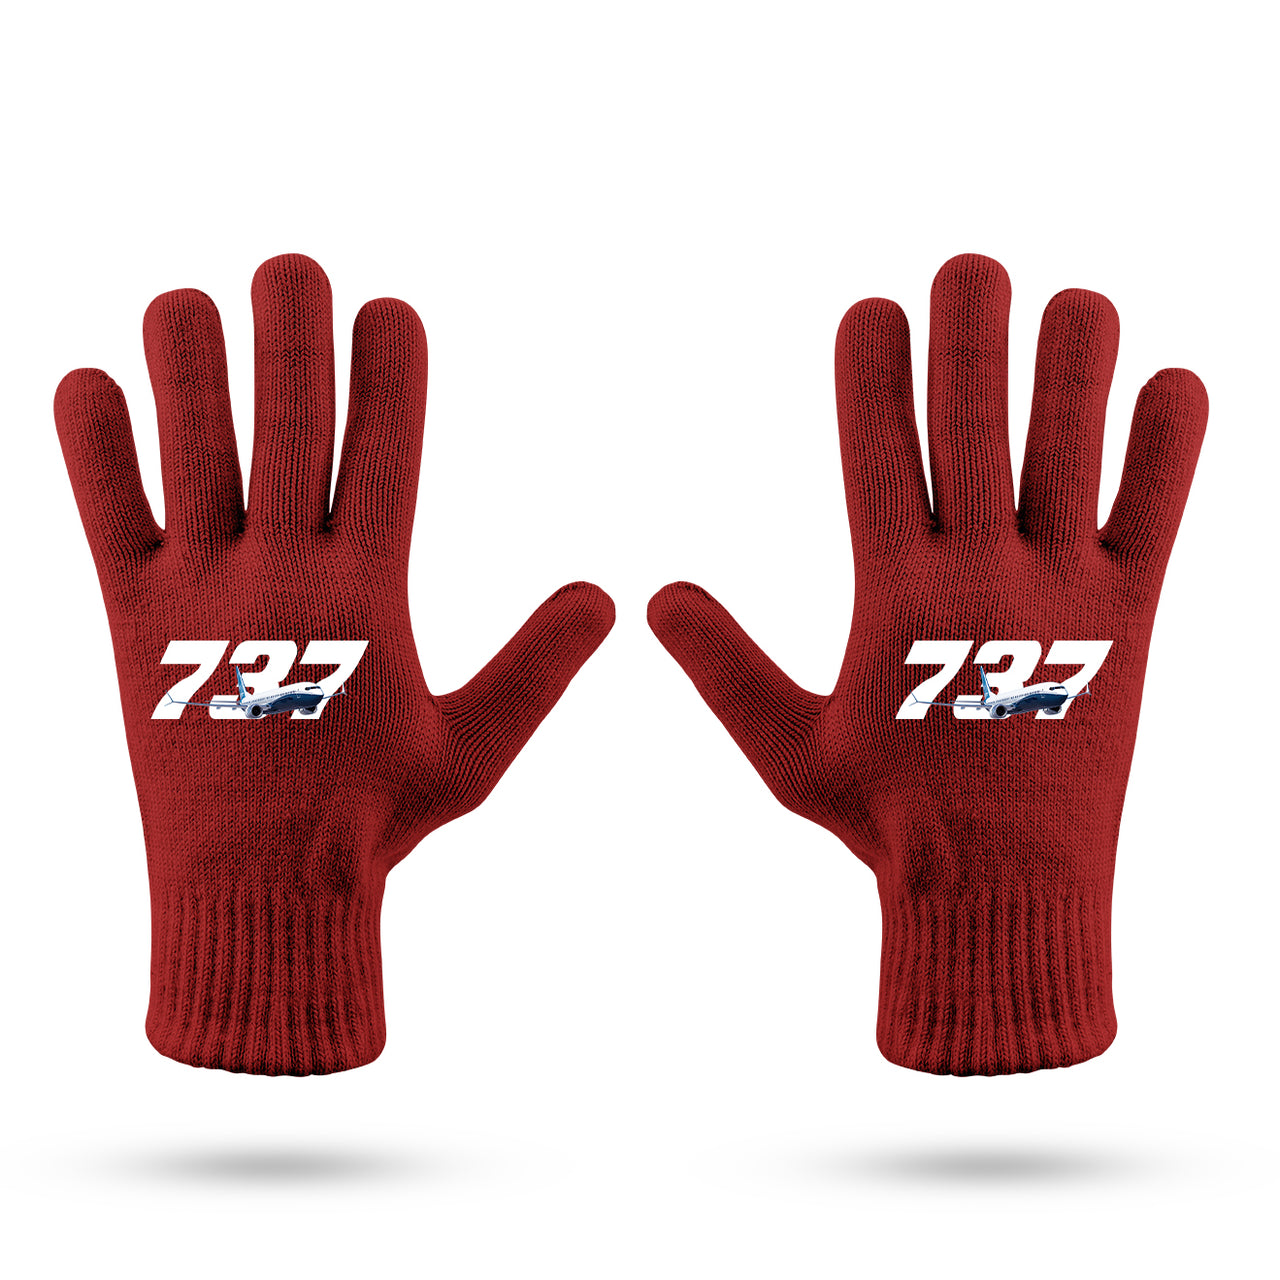 Super Boeing 737 Designed Gloves